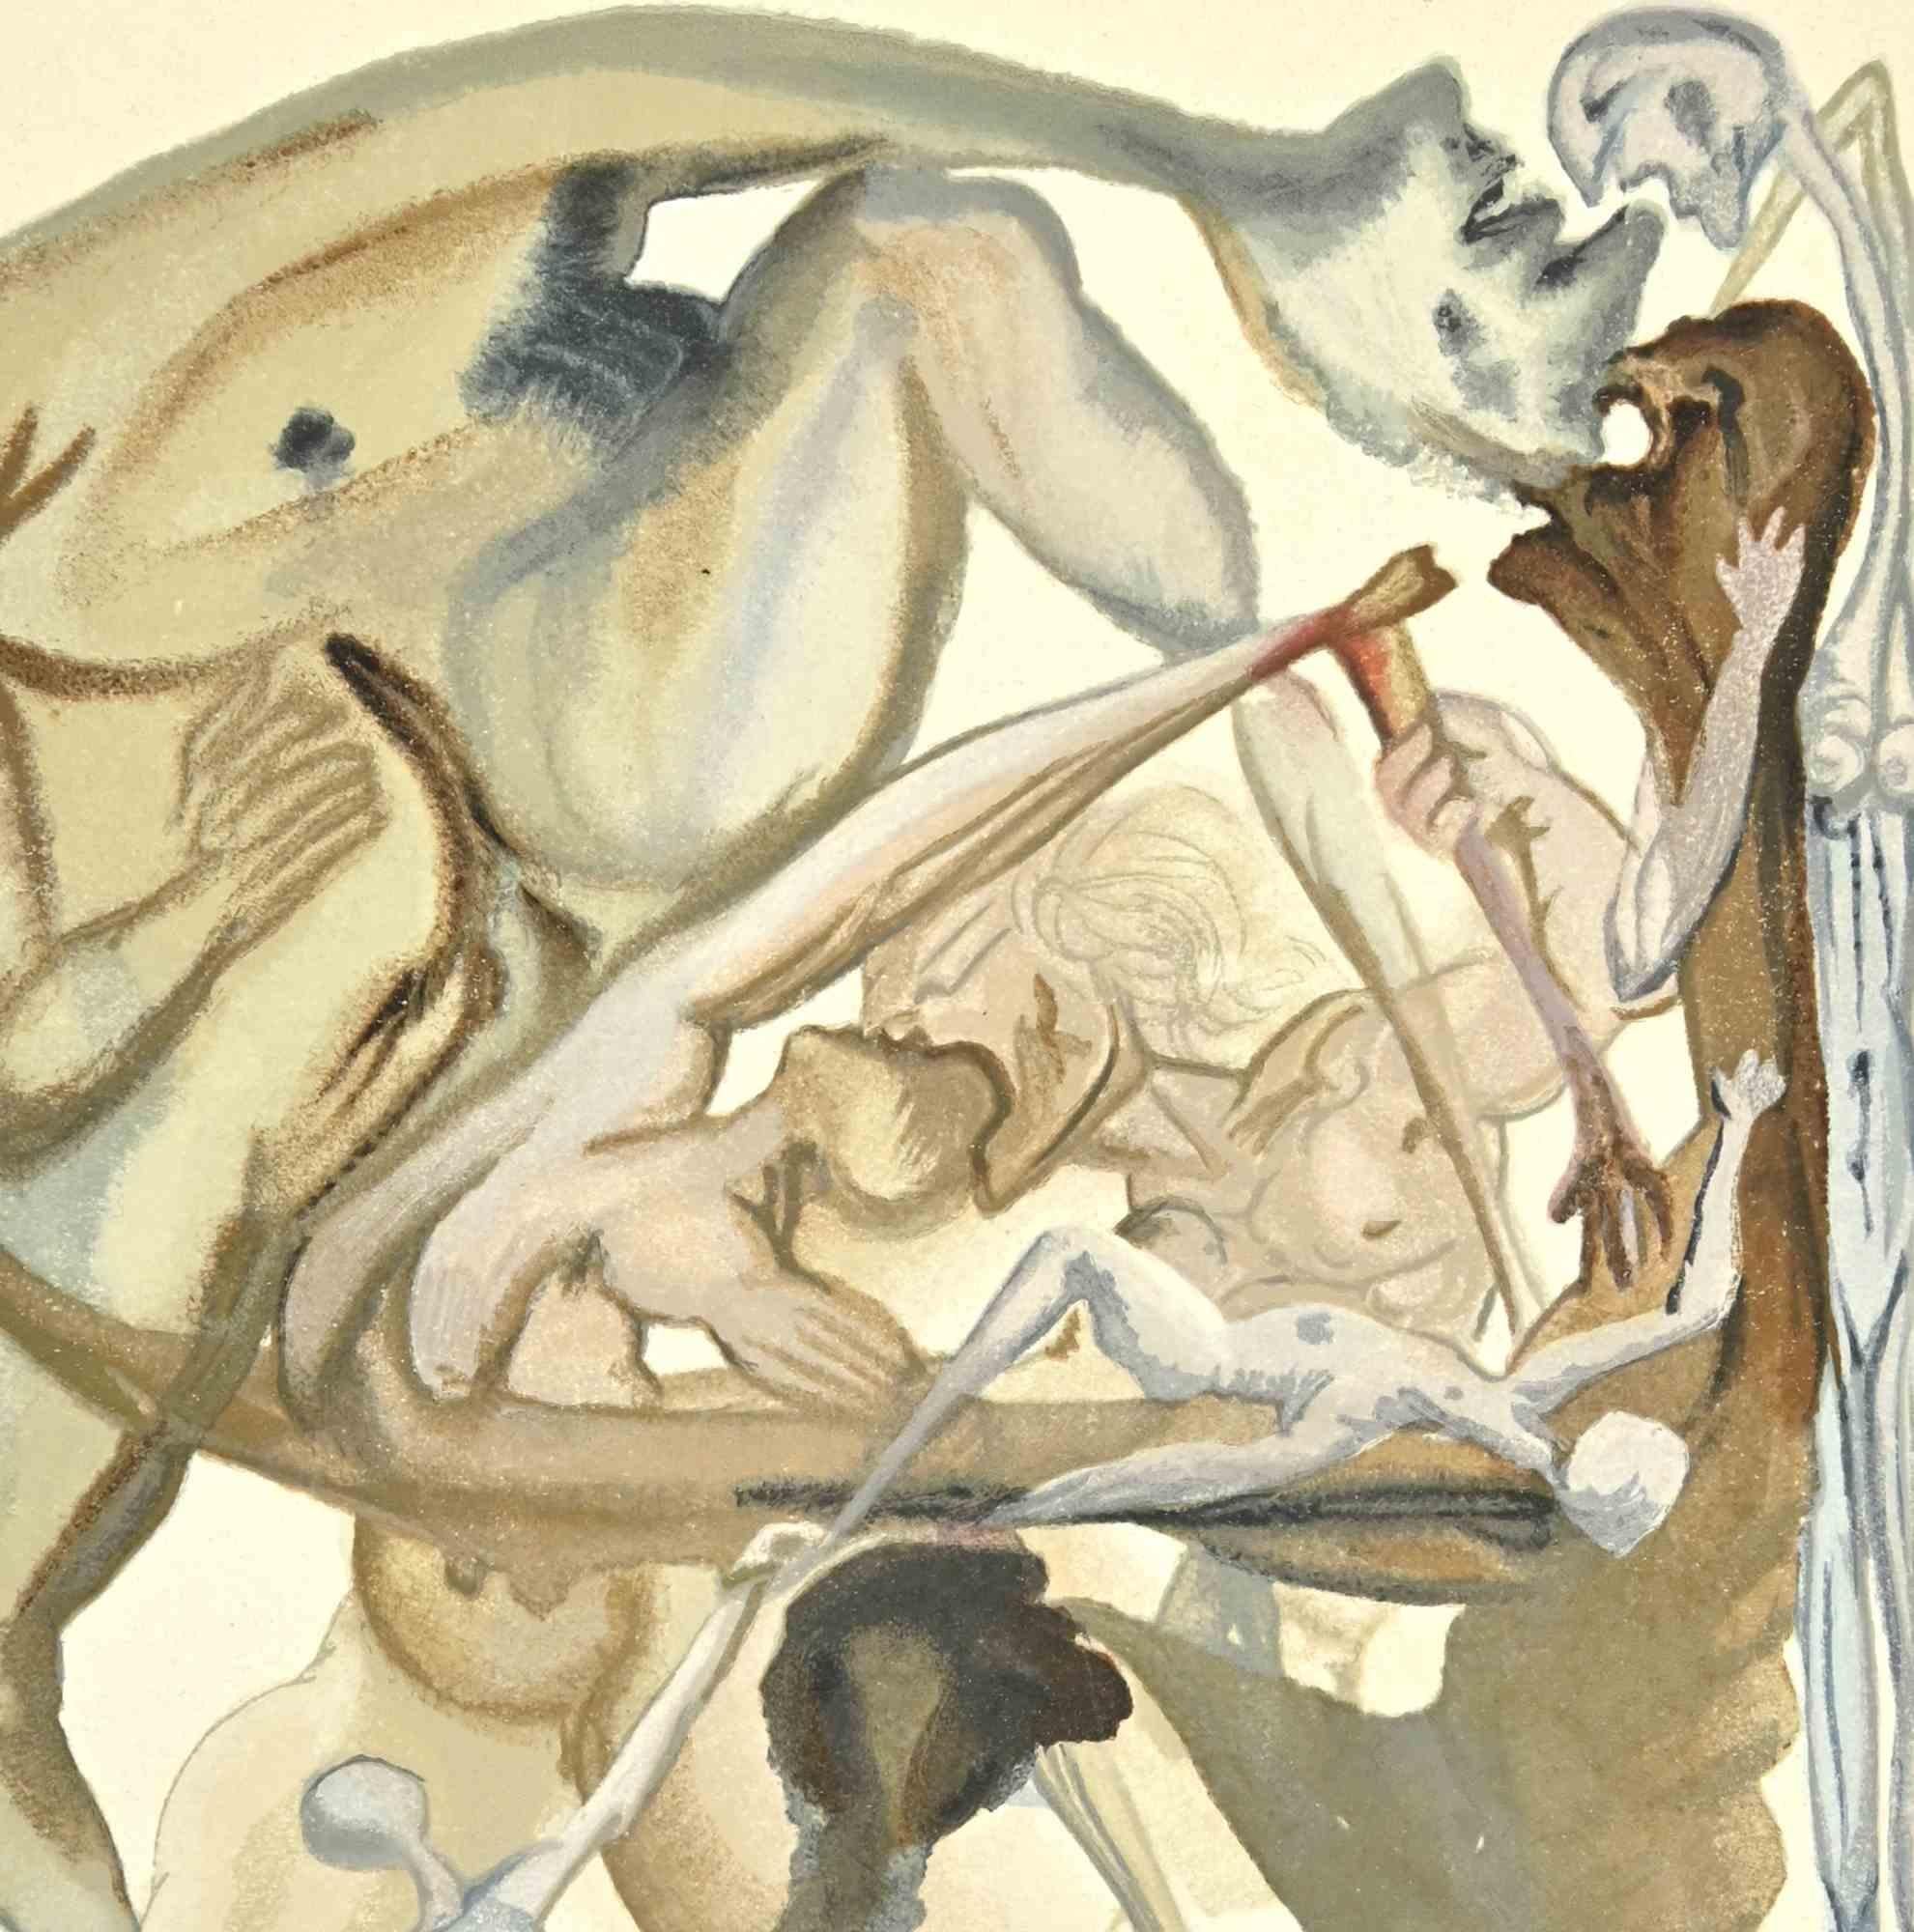 On The Edge of the Seventh Circle - Impression sur bois - 1963 - Print de Salvador Dalí